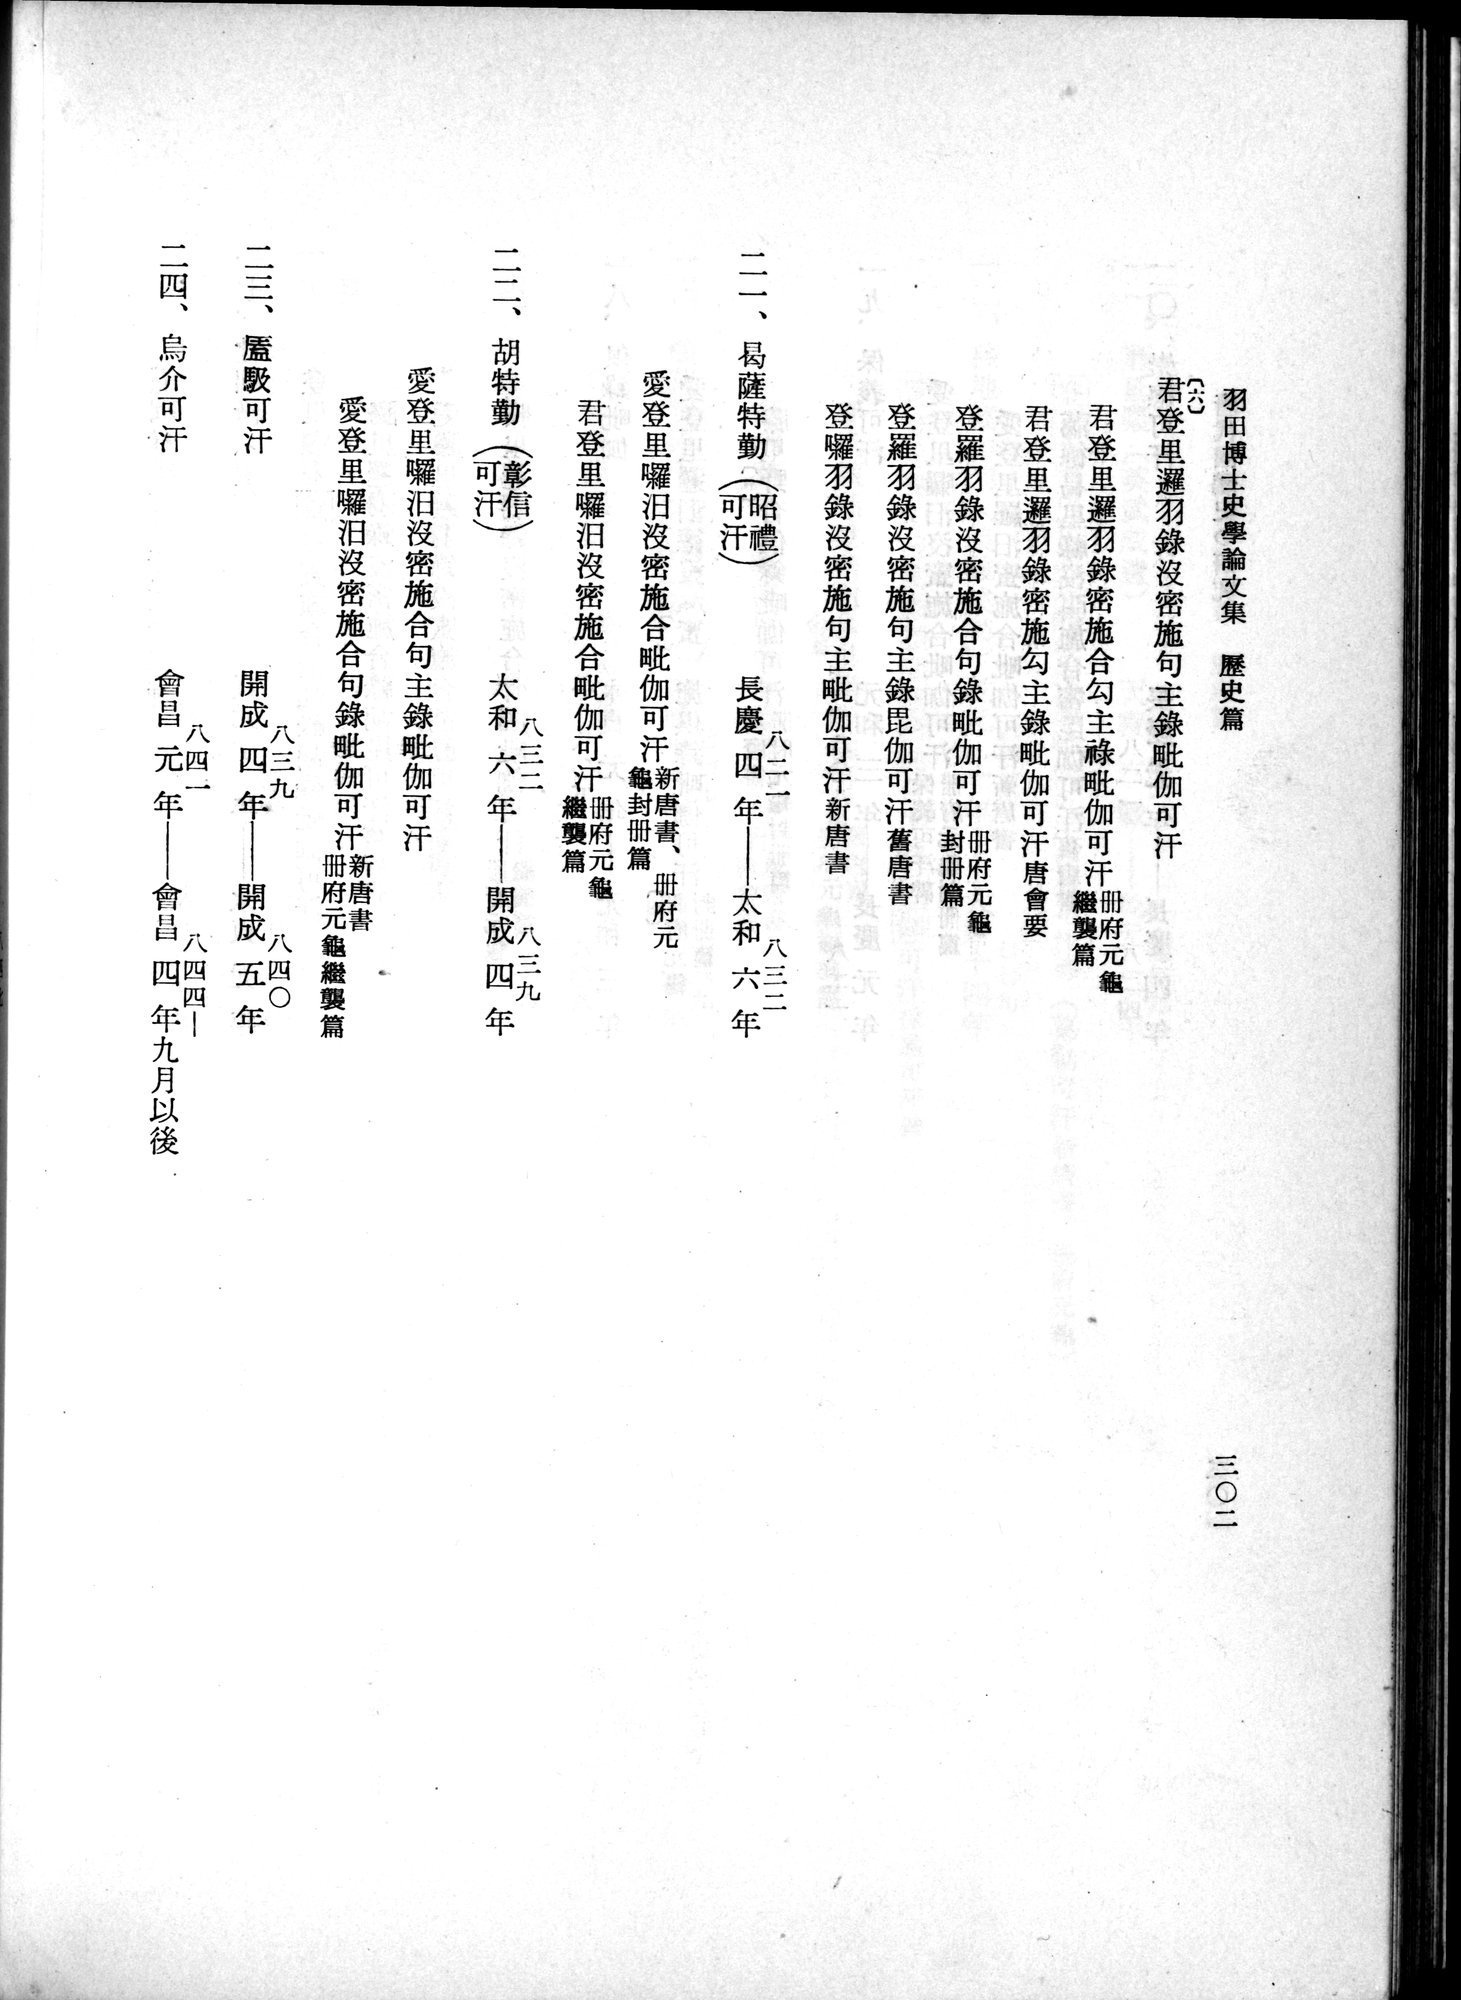 羽田博士史学論文集 : vol.1 / Page 340 (Grayscale High Resolution Image)